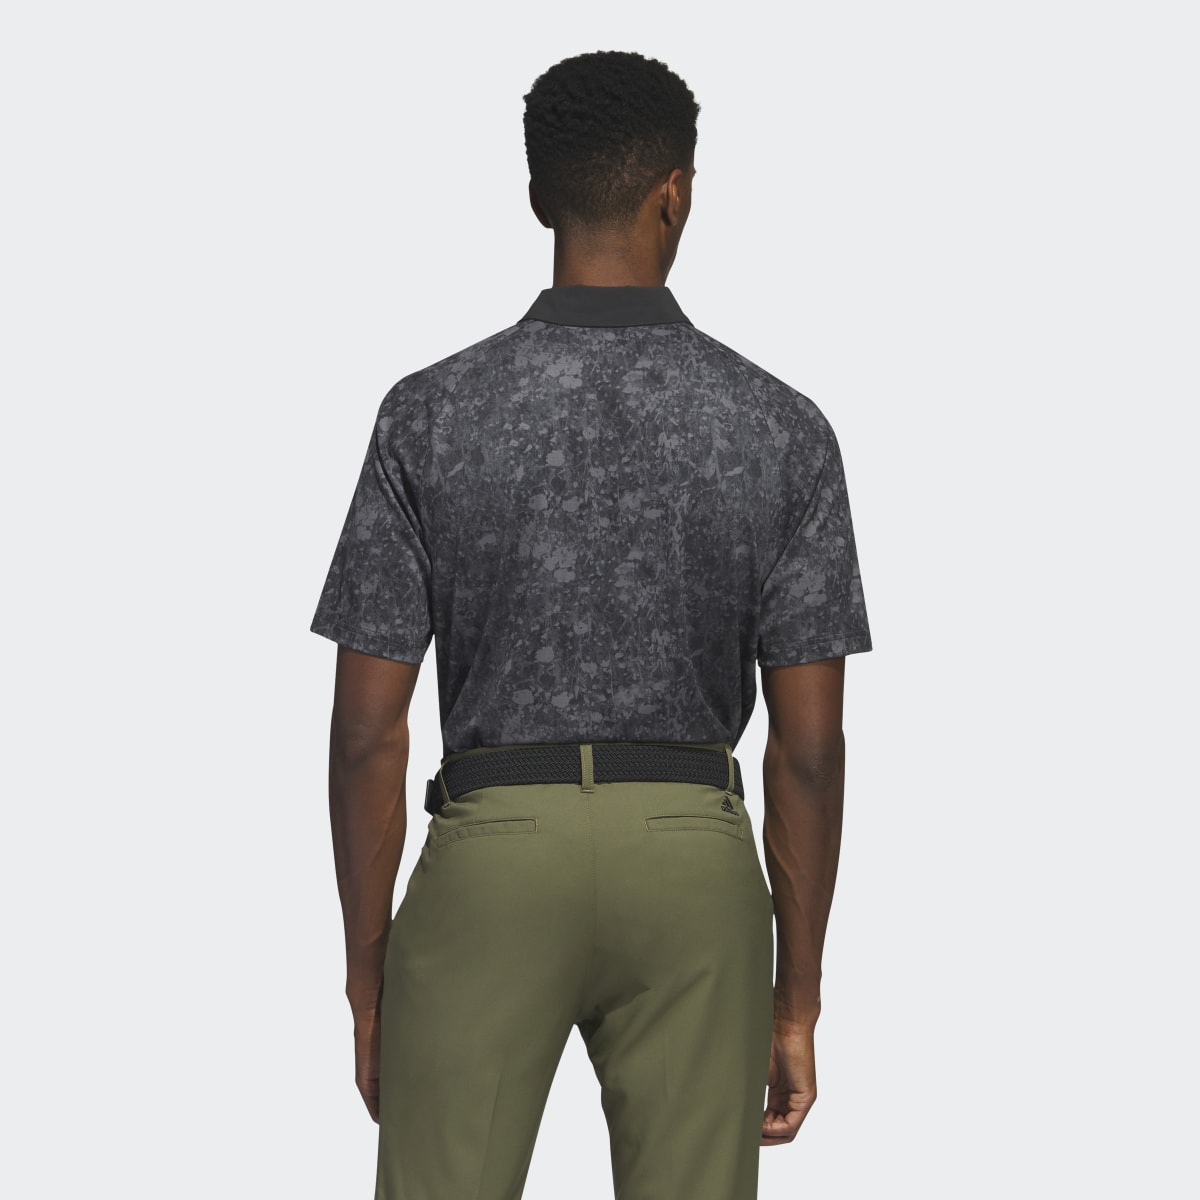 Adidas Mesh Ultimate365 Tour Print Golf Polo Shirt. 4